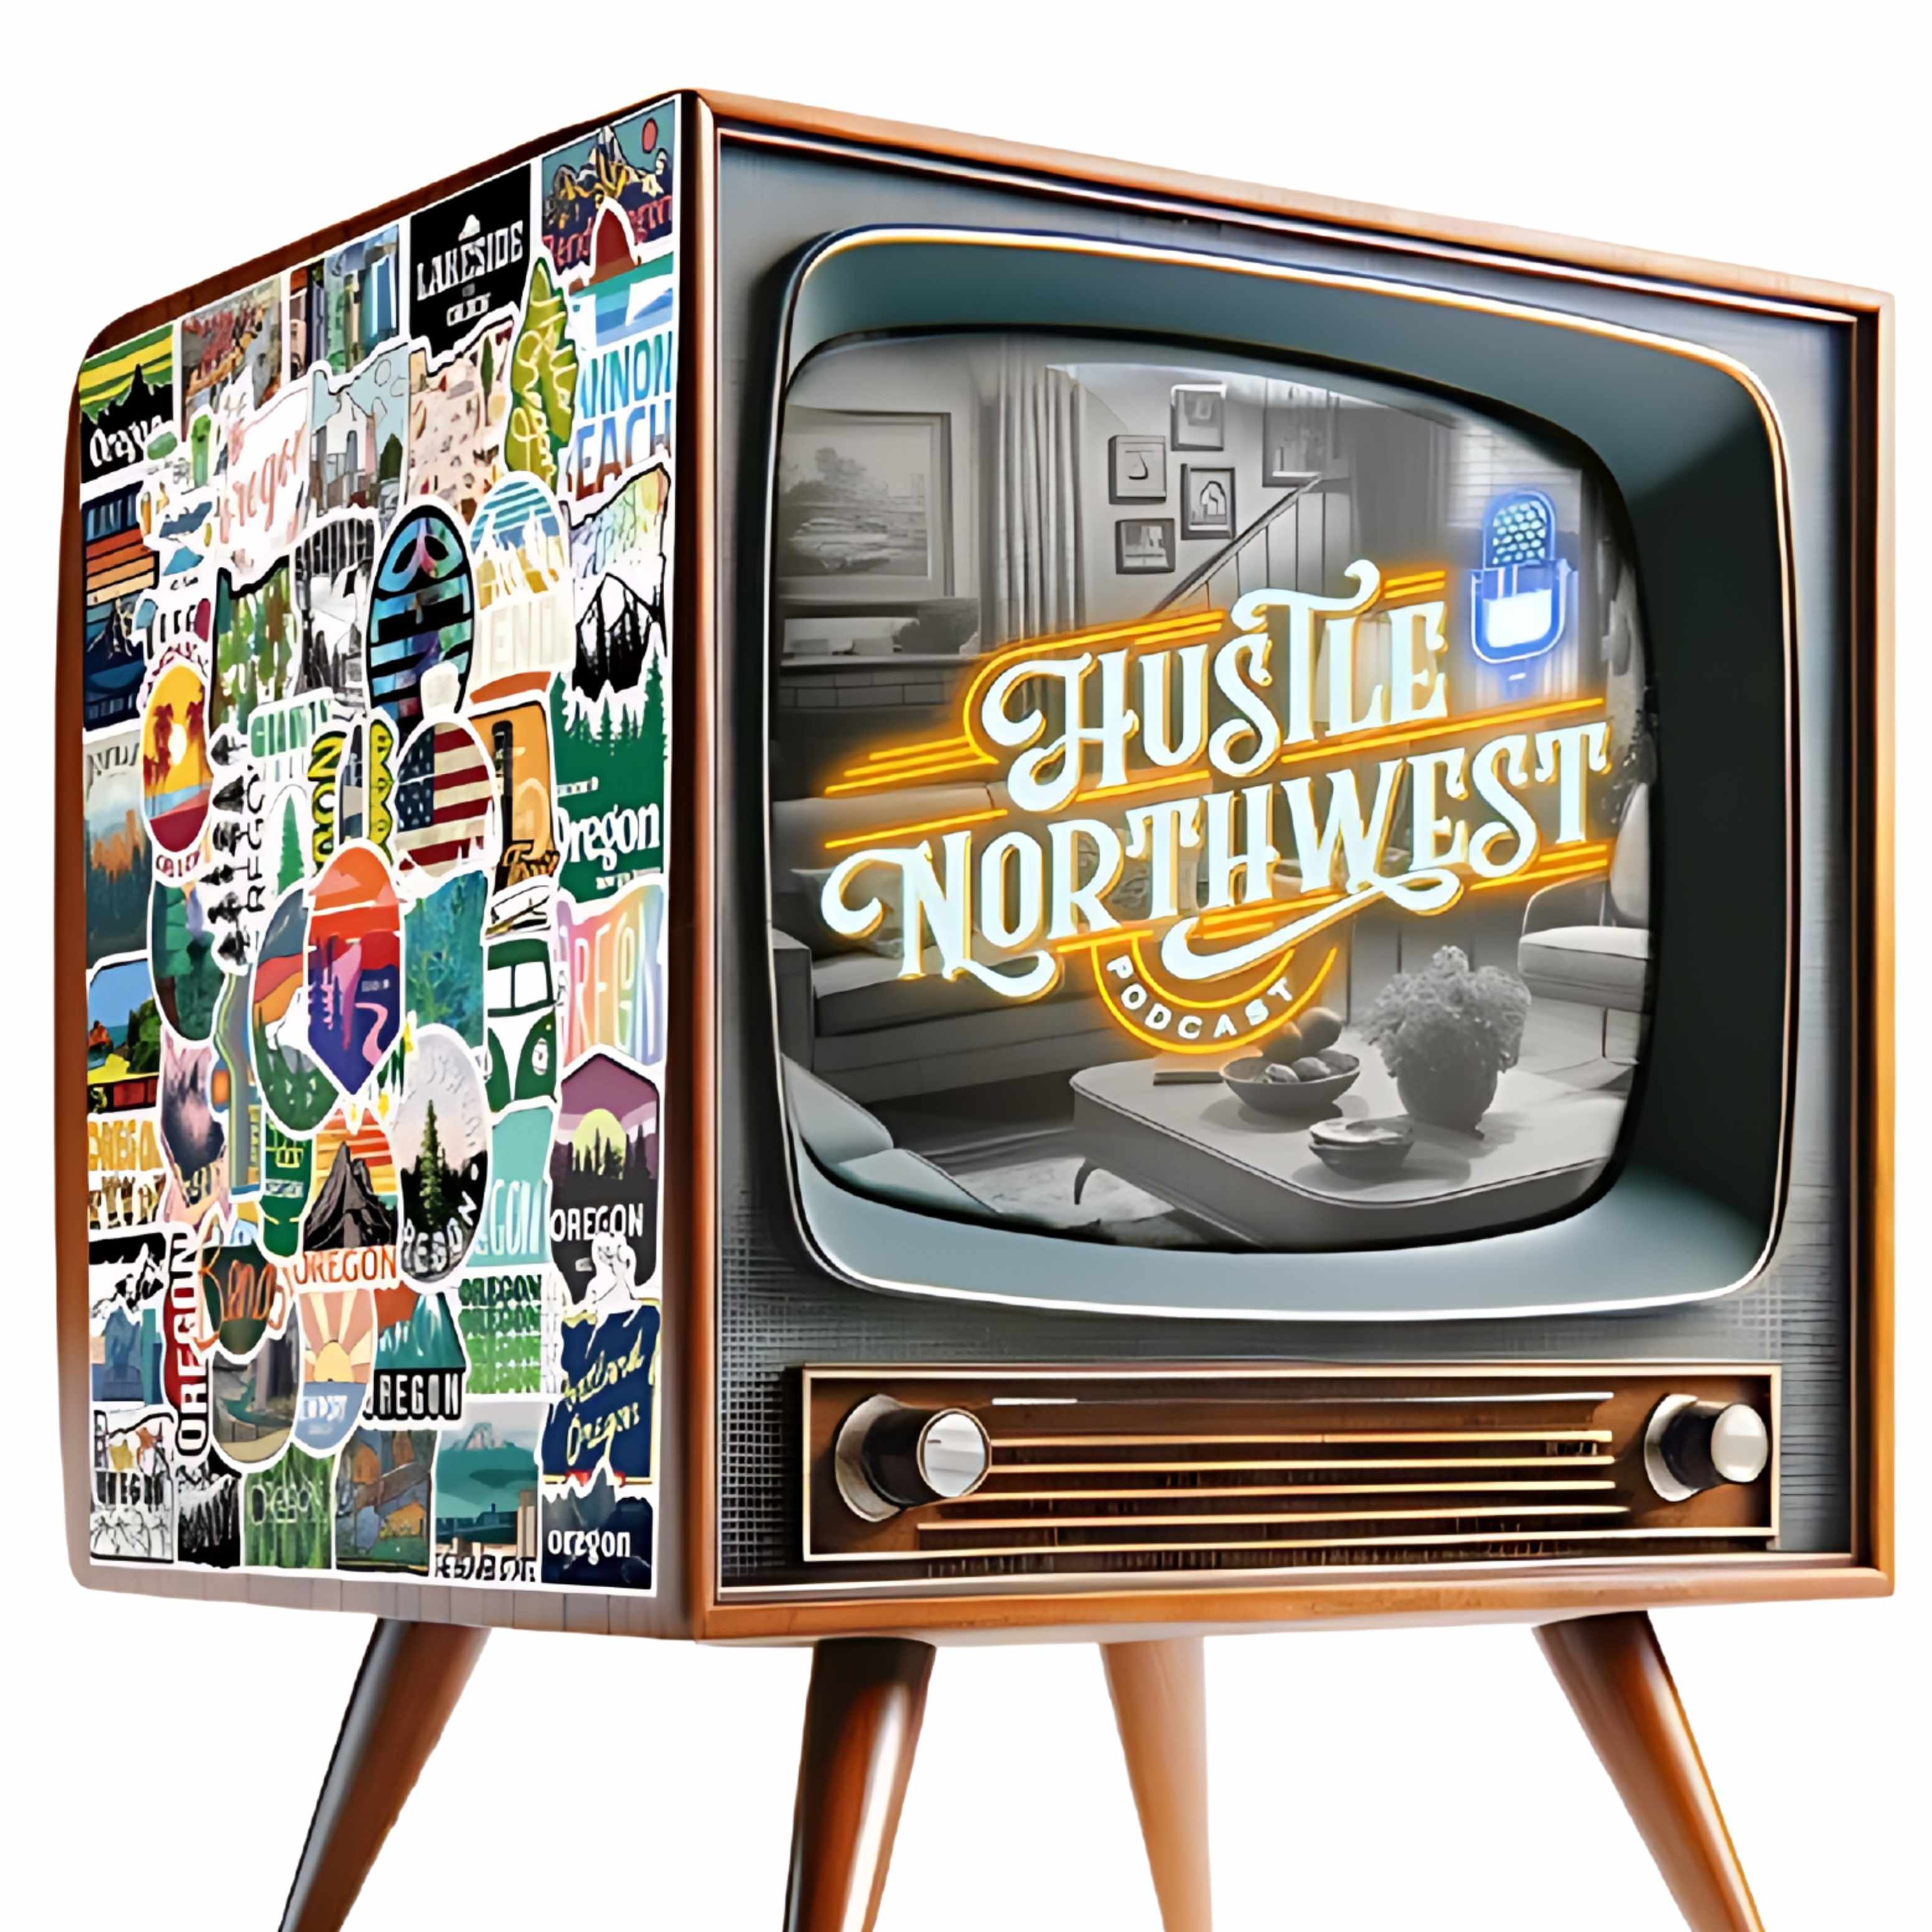 Hustle Northwest Podcast